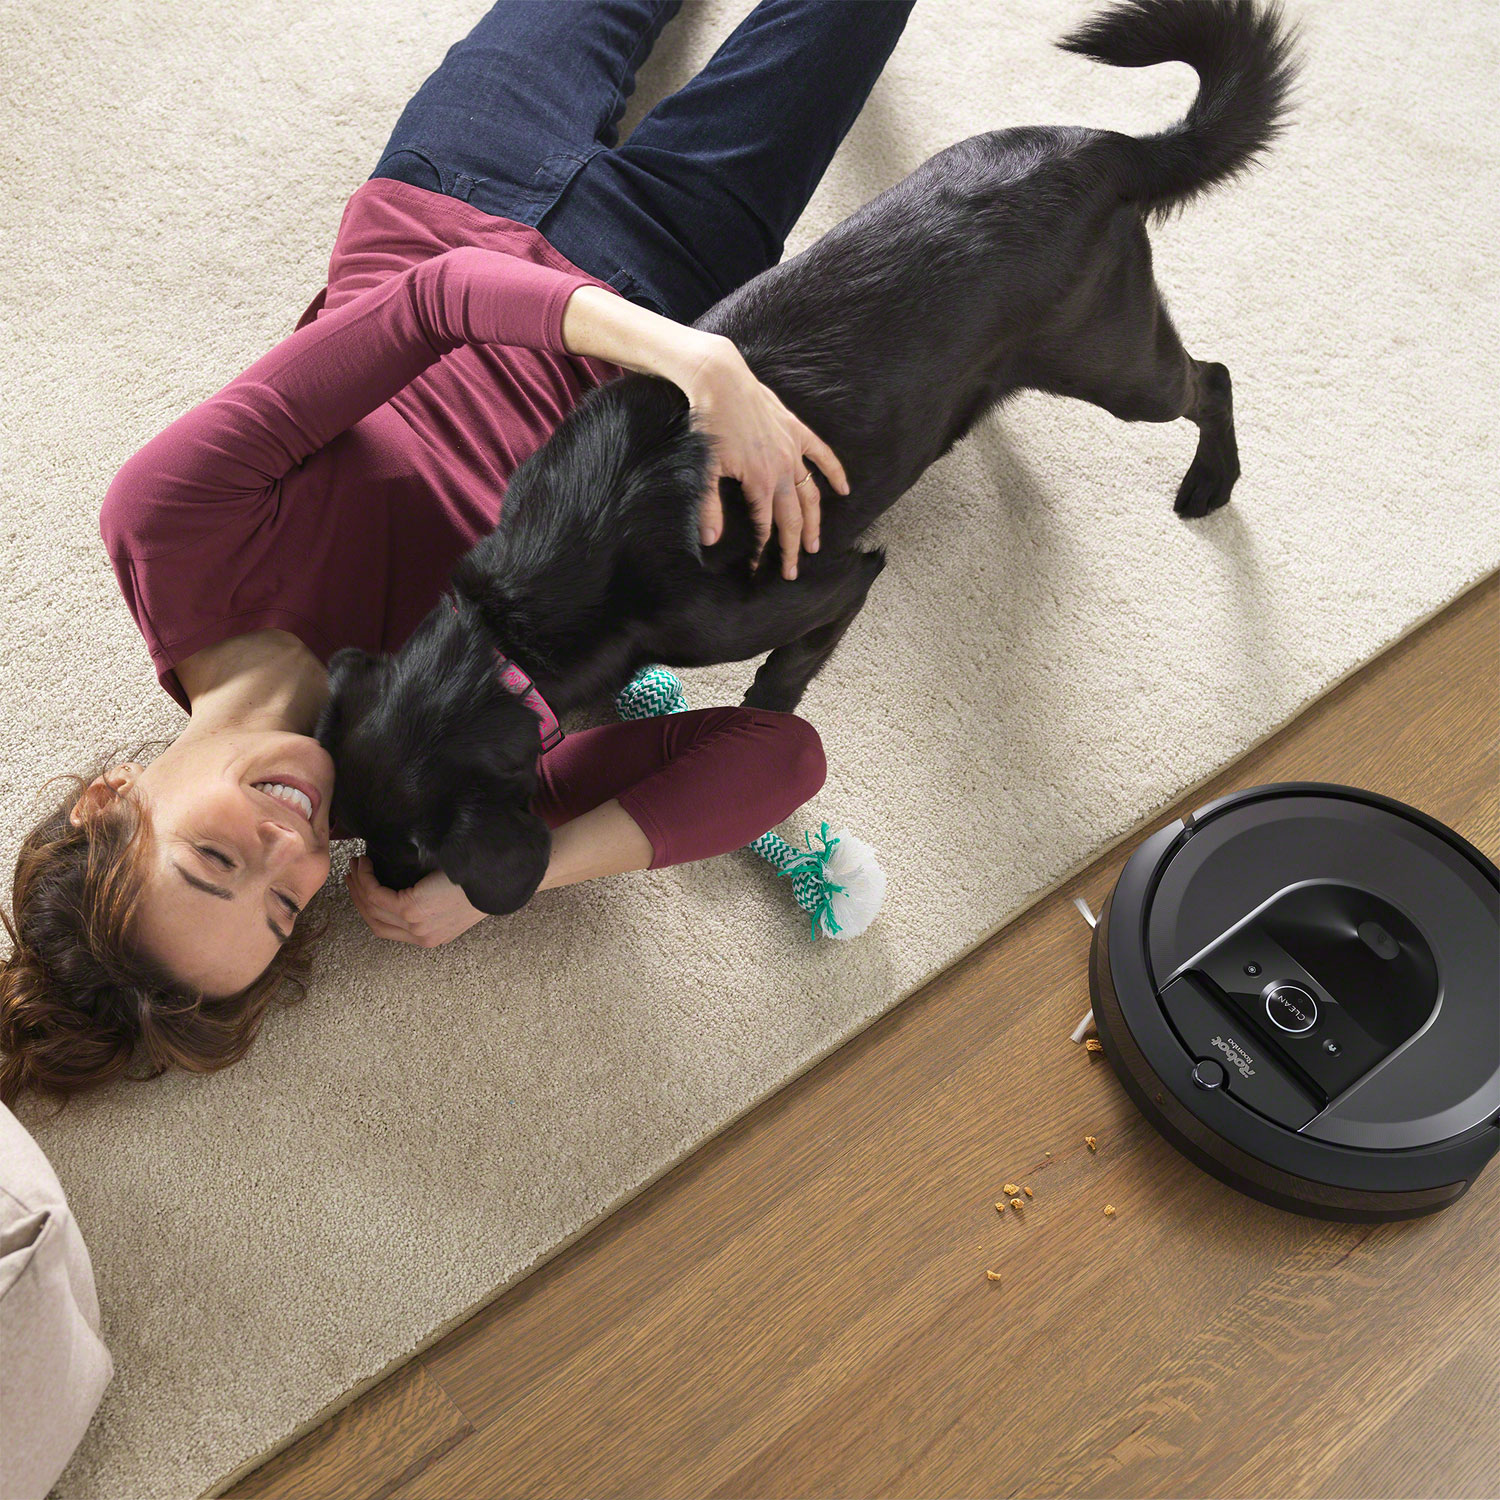 Roomba® j9+, Robot aspirateur pour poils d'animaux et saleté